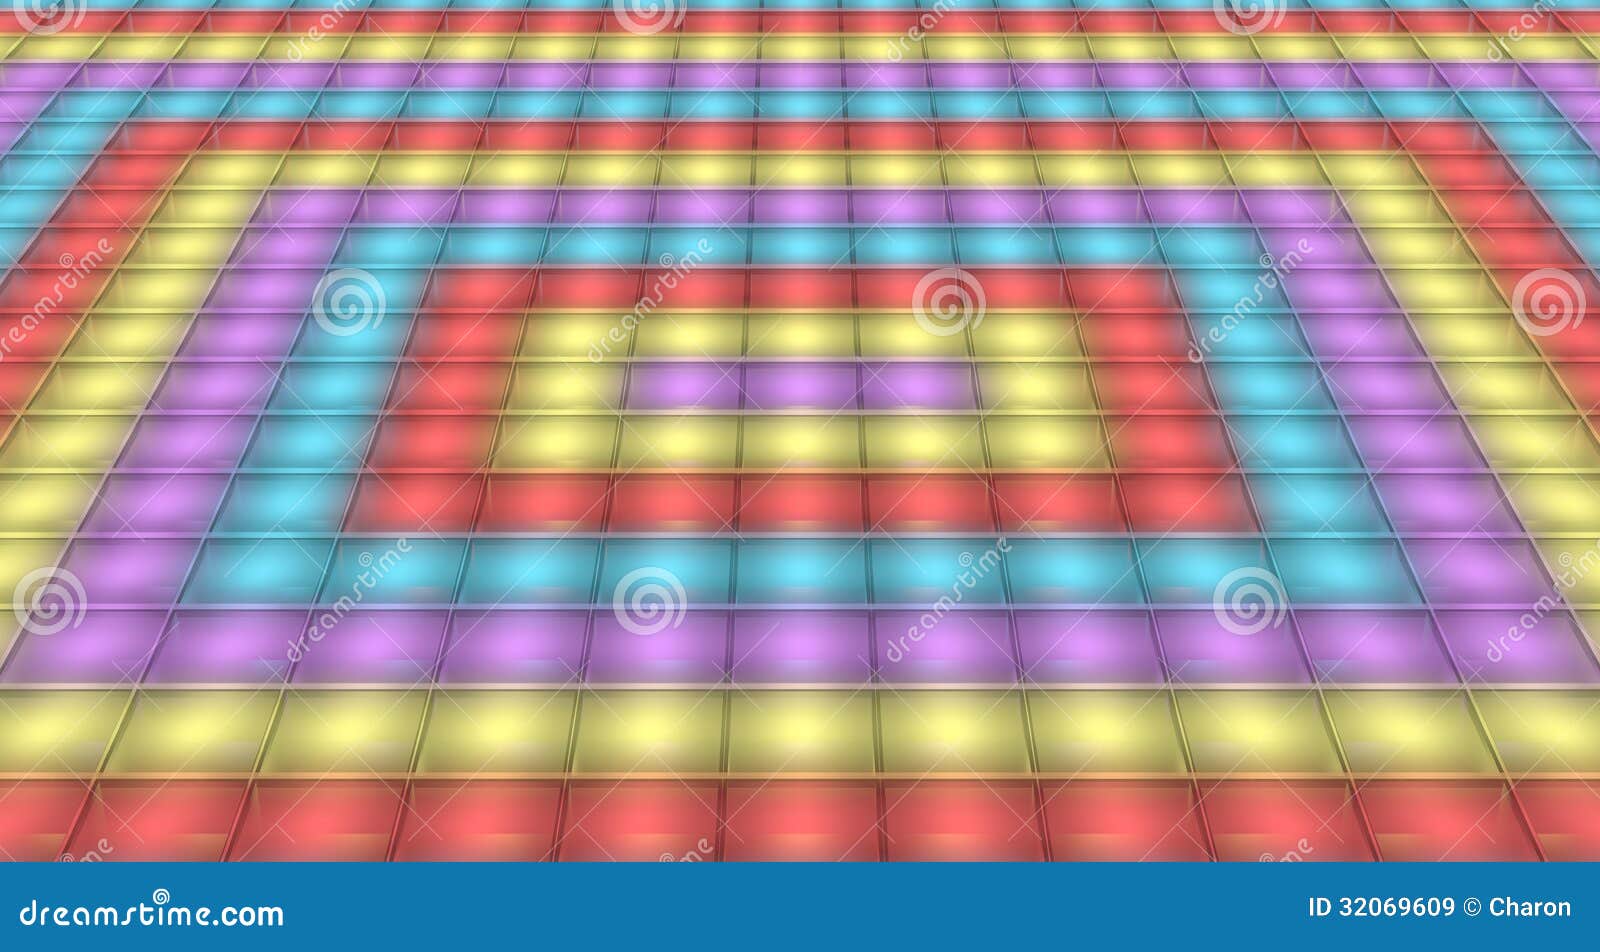 Dance Floor Disco Light Background Stock Illustration